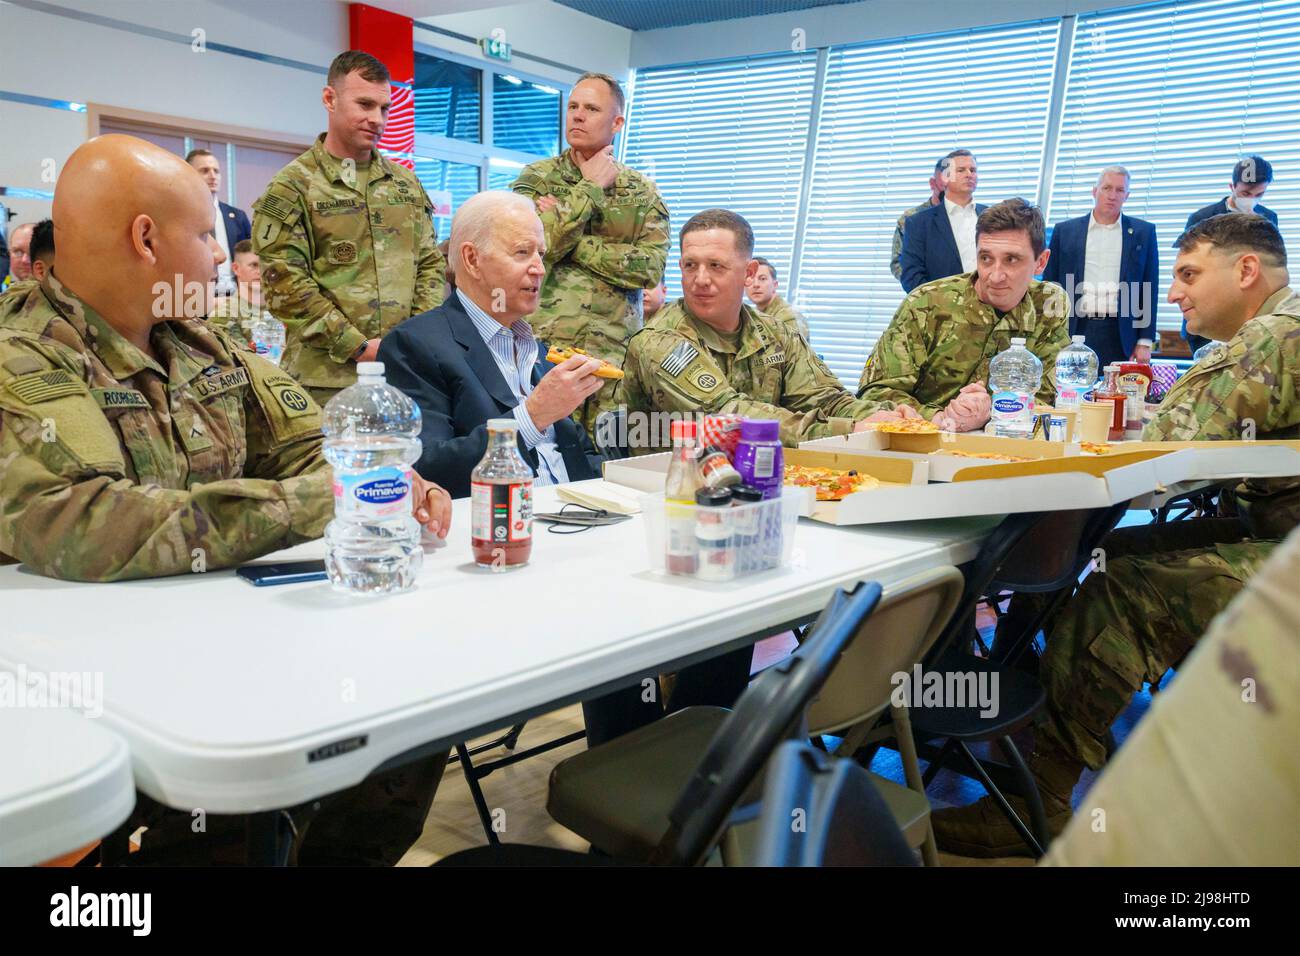 Rzeszow, Polonia. 25 de marzo de 2022. Joe Biden, Presidente de los Estados Unidos, disfruta de un almuerzo con miembros de la División Aerotransportada del Ejército 82nd de los Estados Unidos durante una visita el 25 de marzo de 2022 a Rzeszow, Polonia. Crédito: Adam Schultz/Casa Blanca Foto/Alamy Live News Foto de stock